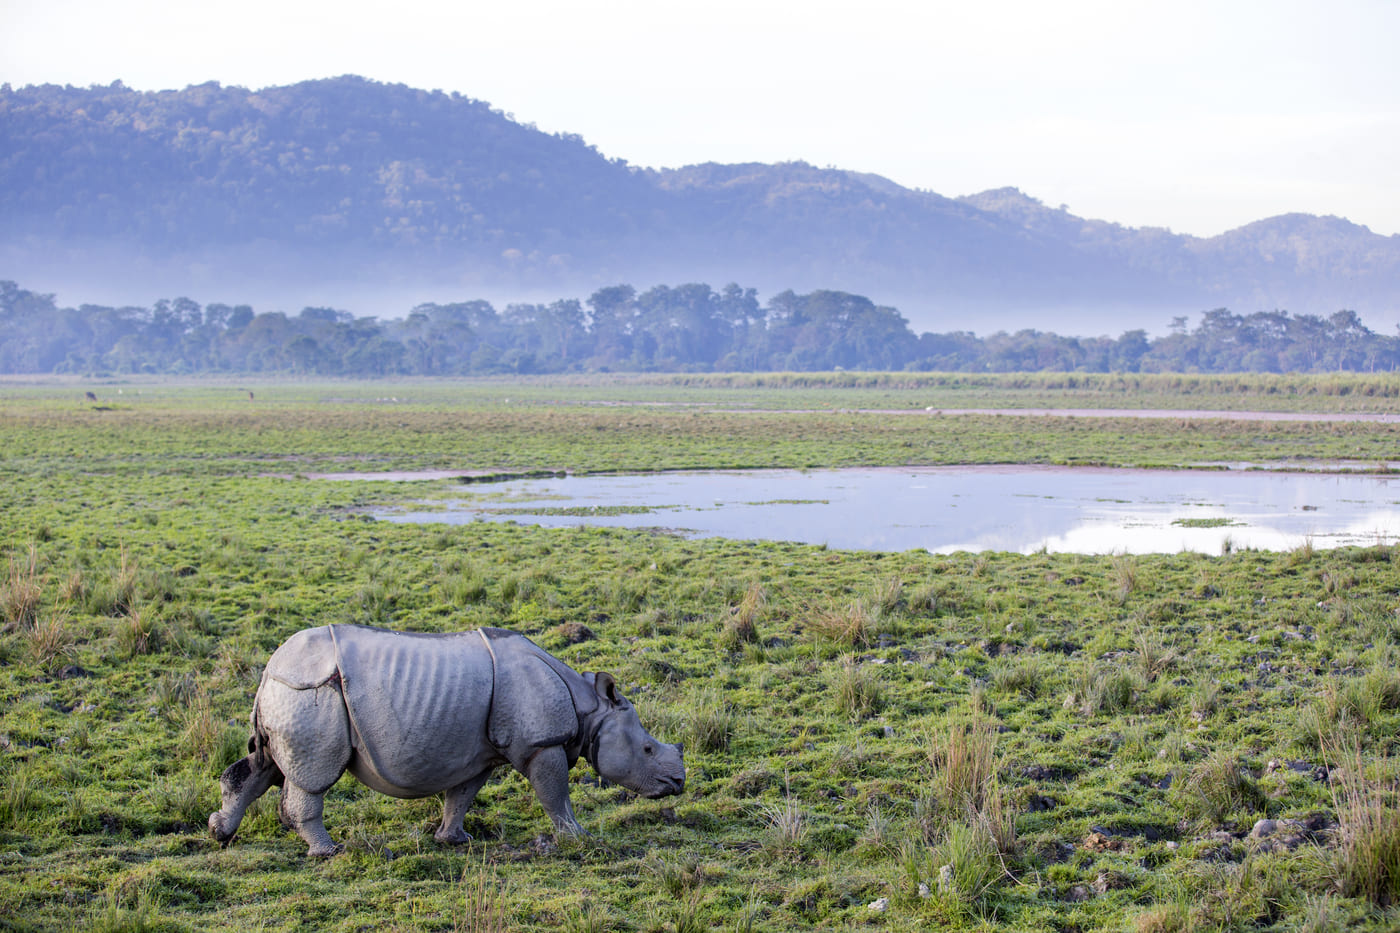 One horned Rhinoceros in Kaziranga National Park, Assam, India